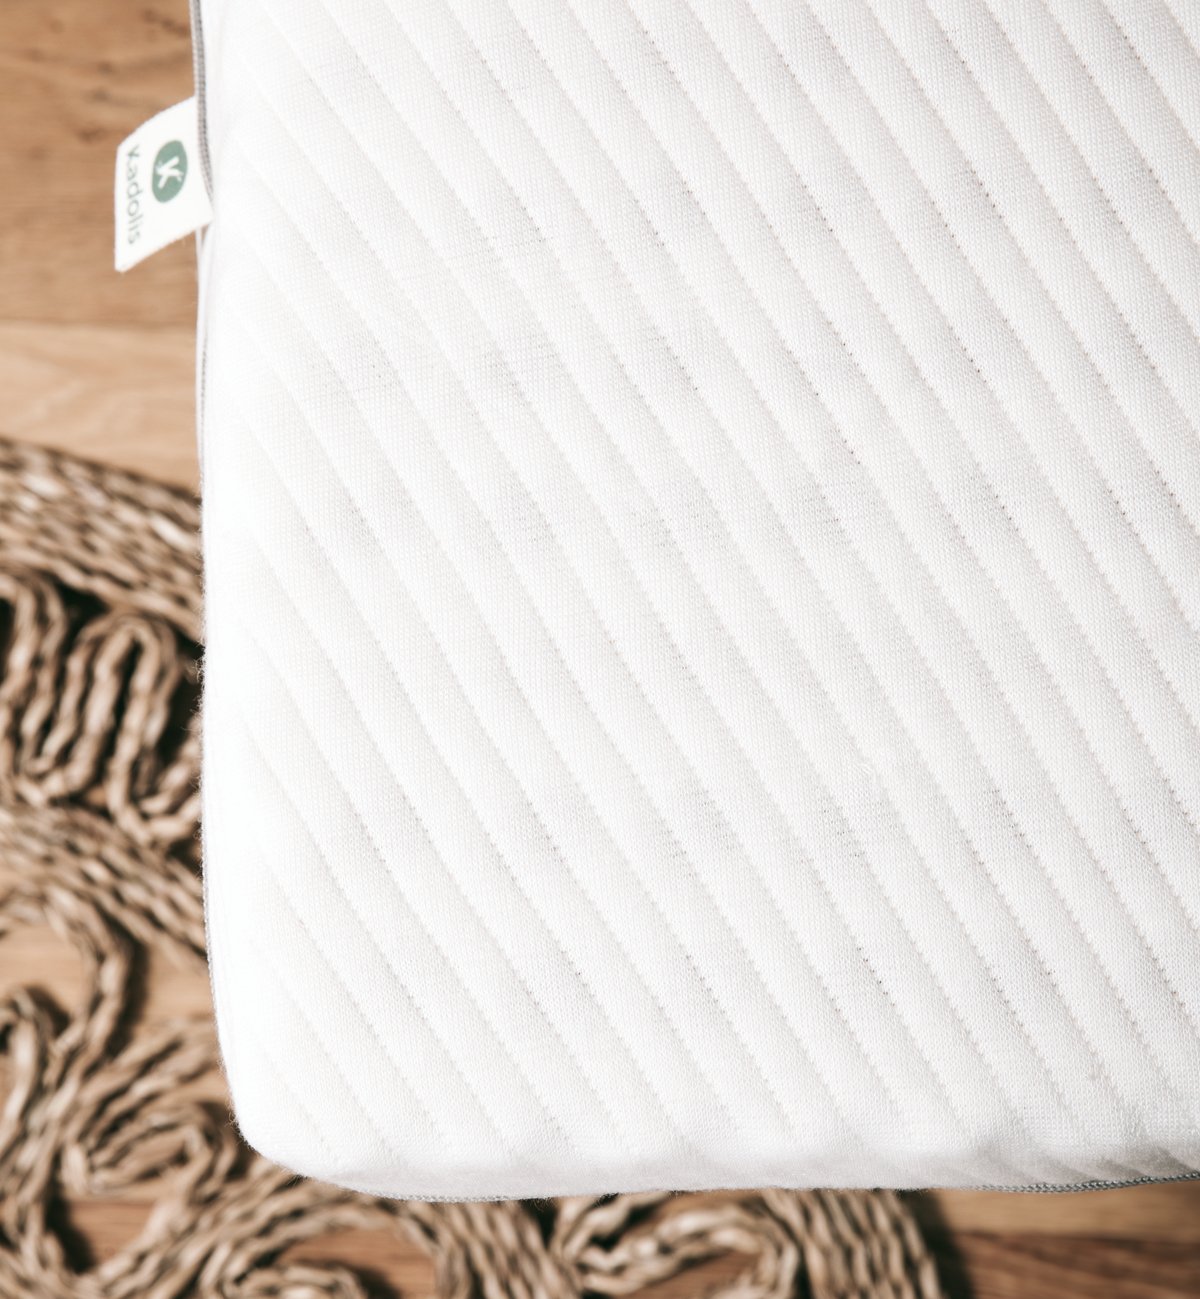 Natuurlijke latex matras topper voor tweepersoonsbedden, een ideale oplossing om het comfort van je matras te verhogen